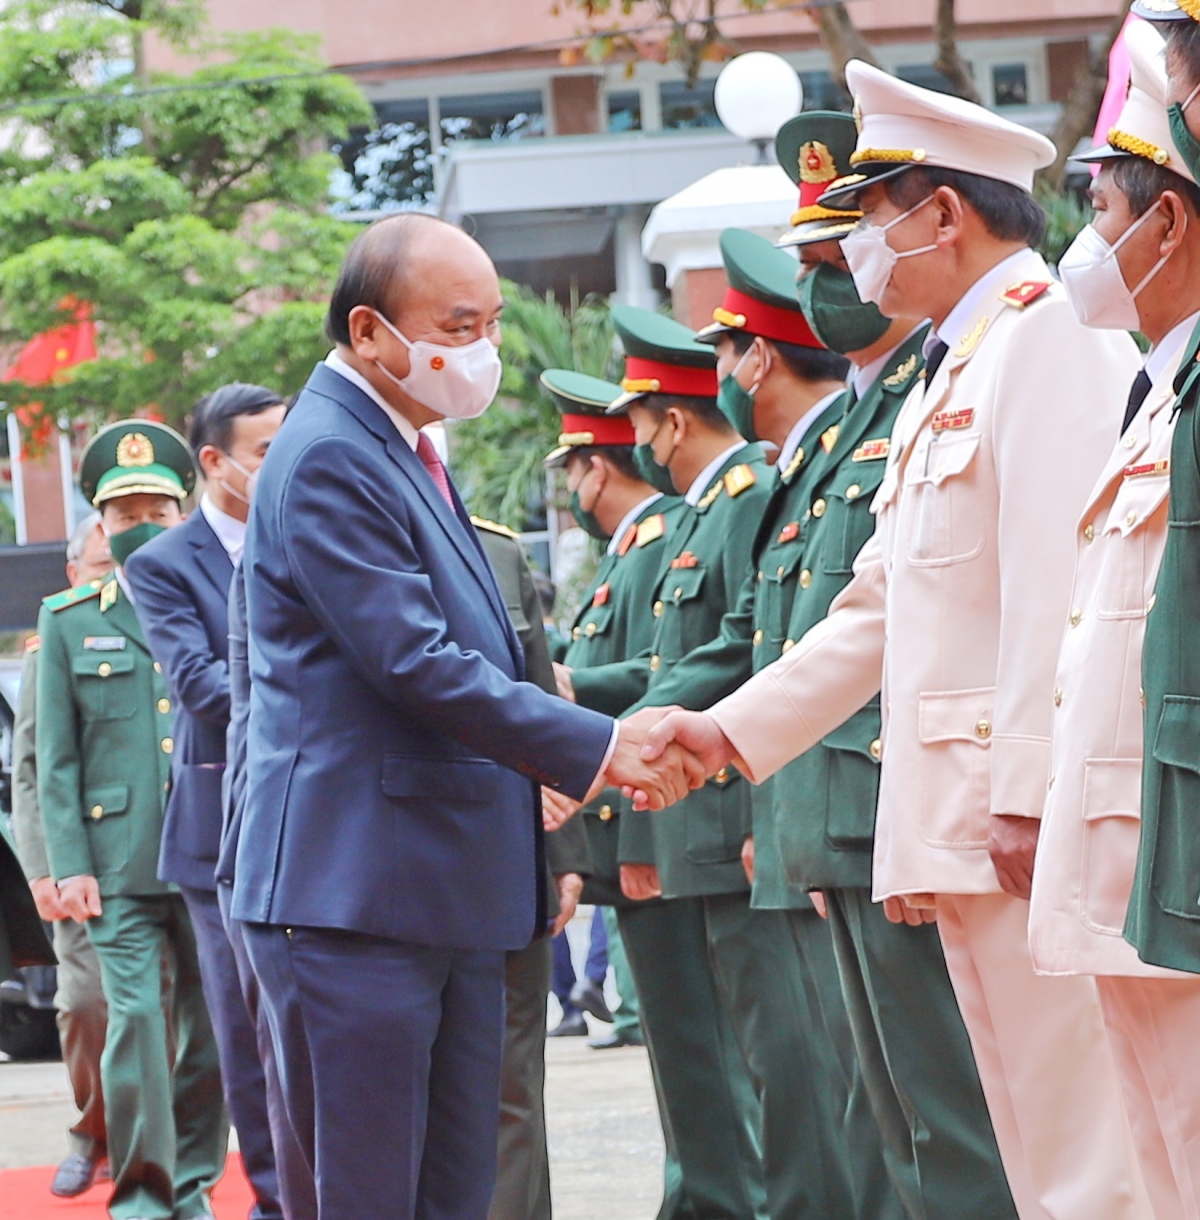 Chủ tịch nước Nguyễn Xuân Phúc chúc Tết tại Đà Nẵng